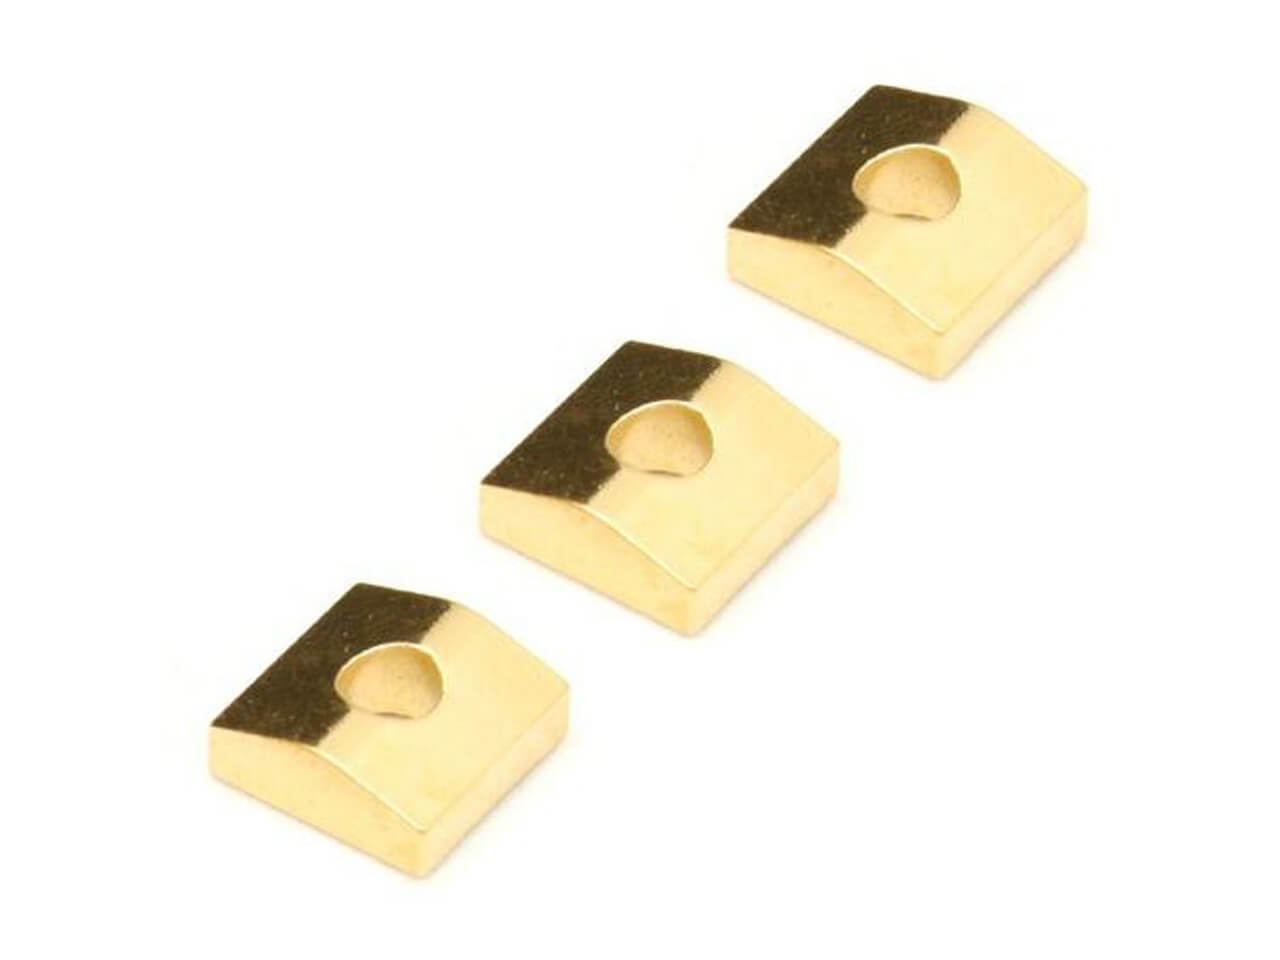 Floyd Rose(フロイドローズ) FRNCBGP | Original Nut Clamping Blocks (Set of 3) -Gold-